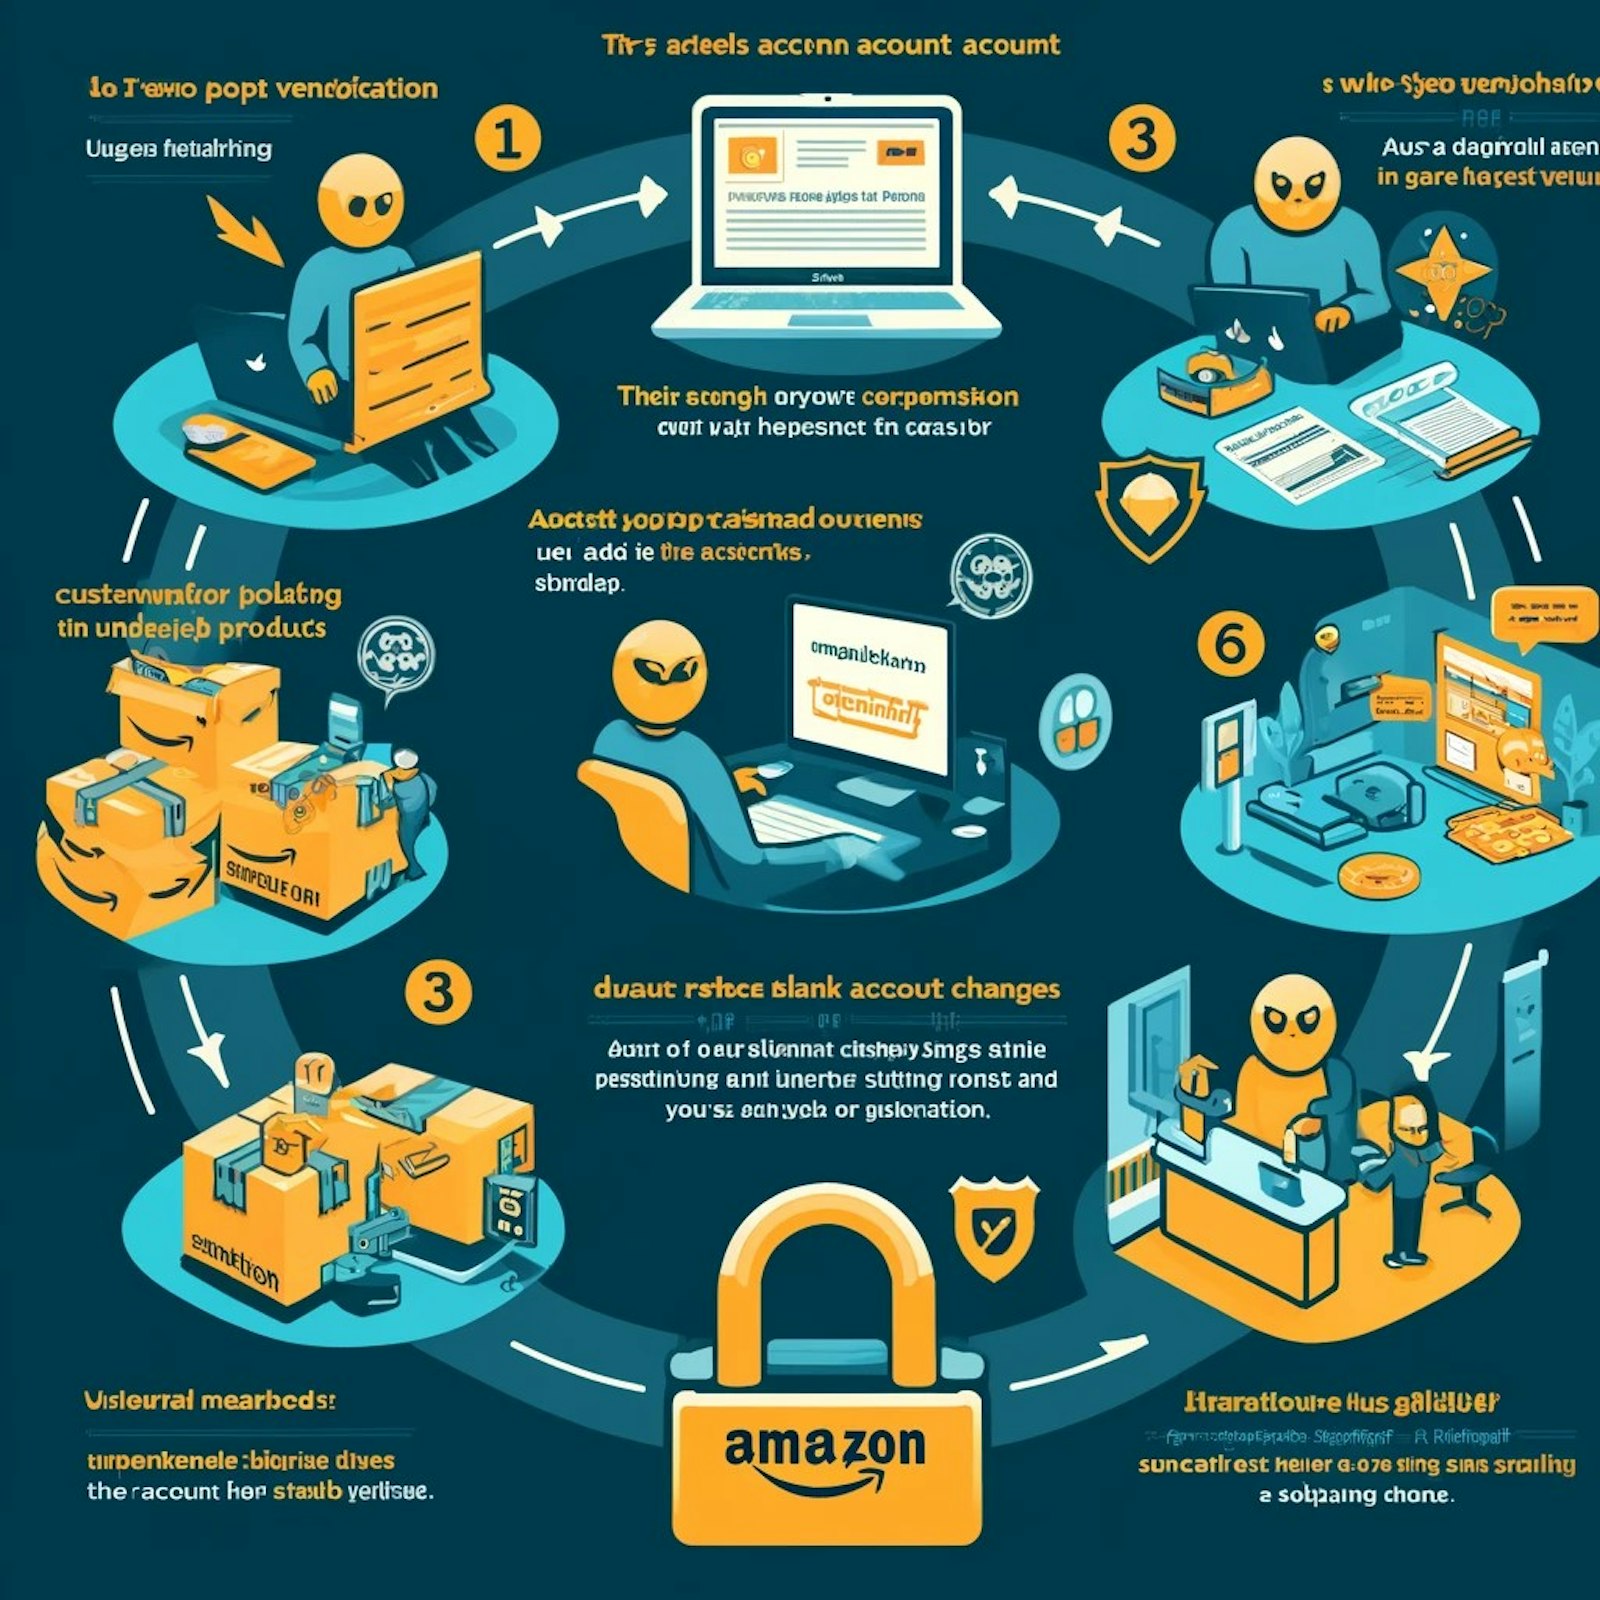 Illustration montrant le piratage d'un compte vendeur Amazon, avec un hacker ajoutant des produits, des clients mécontents et un compte suspendu, mettant en évidence les enjeux de la sécurité en ligne.